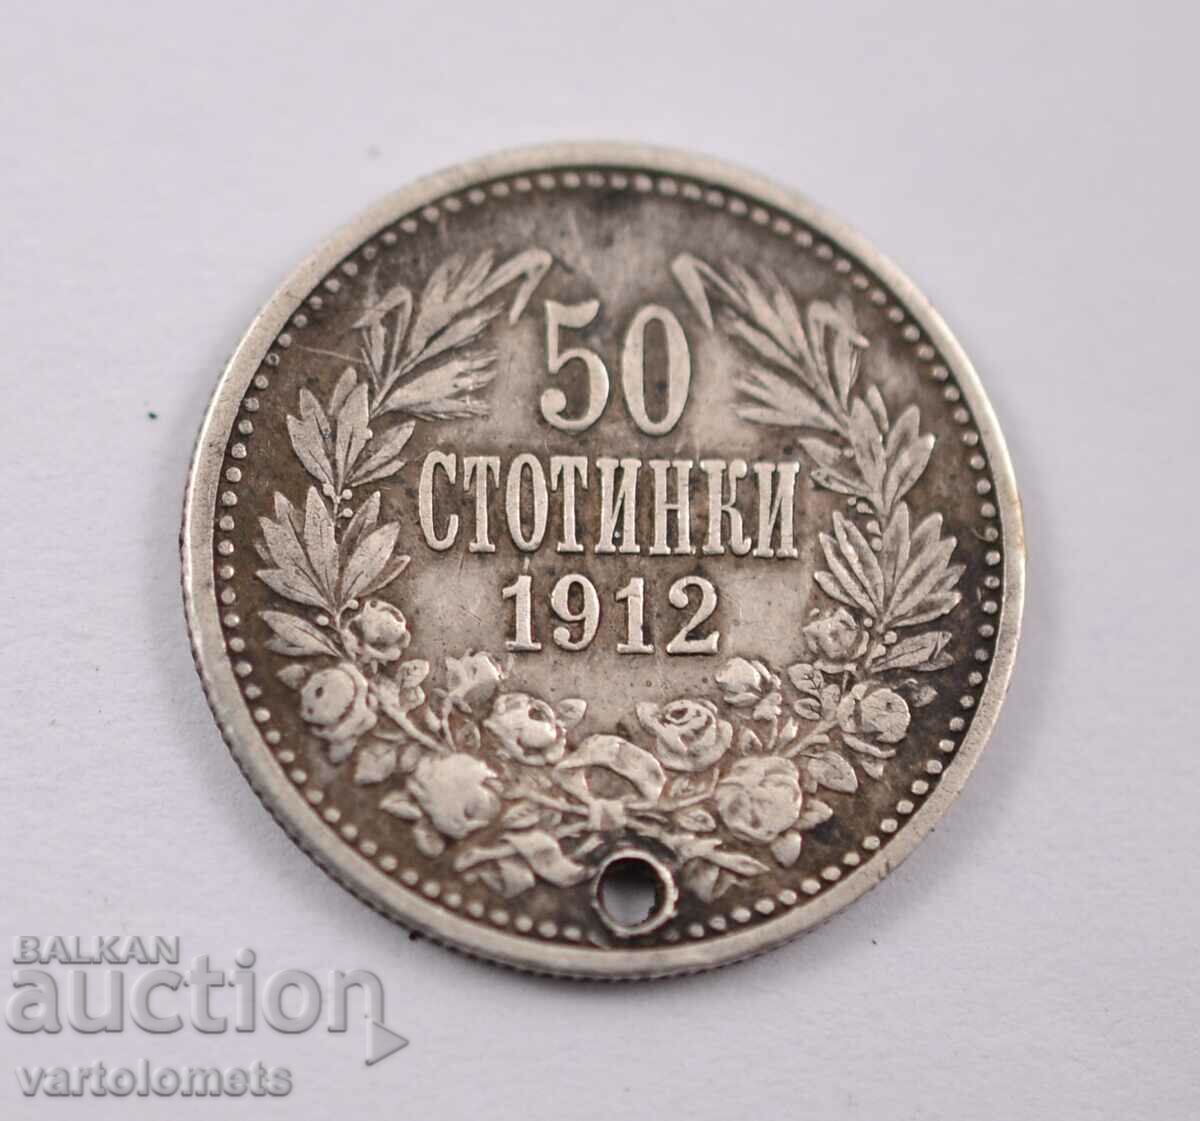 50 stotinki 1912 - Bulgaria